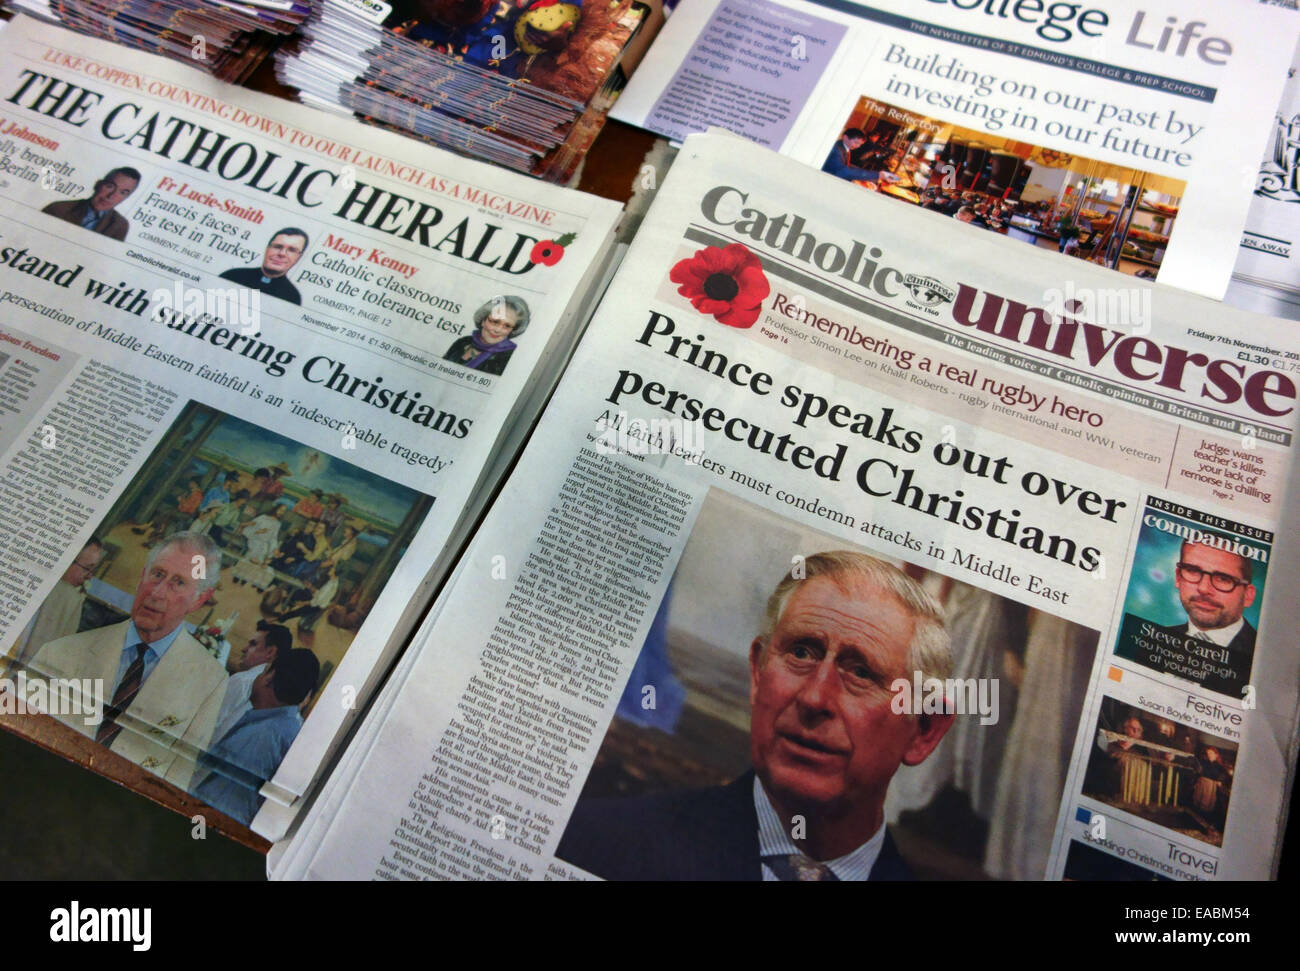 Roman Catholic newspapers on sale in a Catholic church, London - Catholic Herald and Catholic Universe Stock Photo